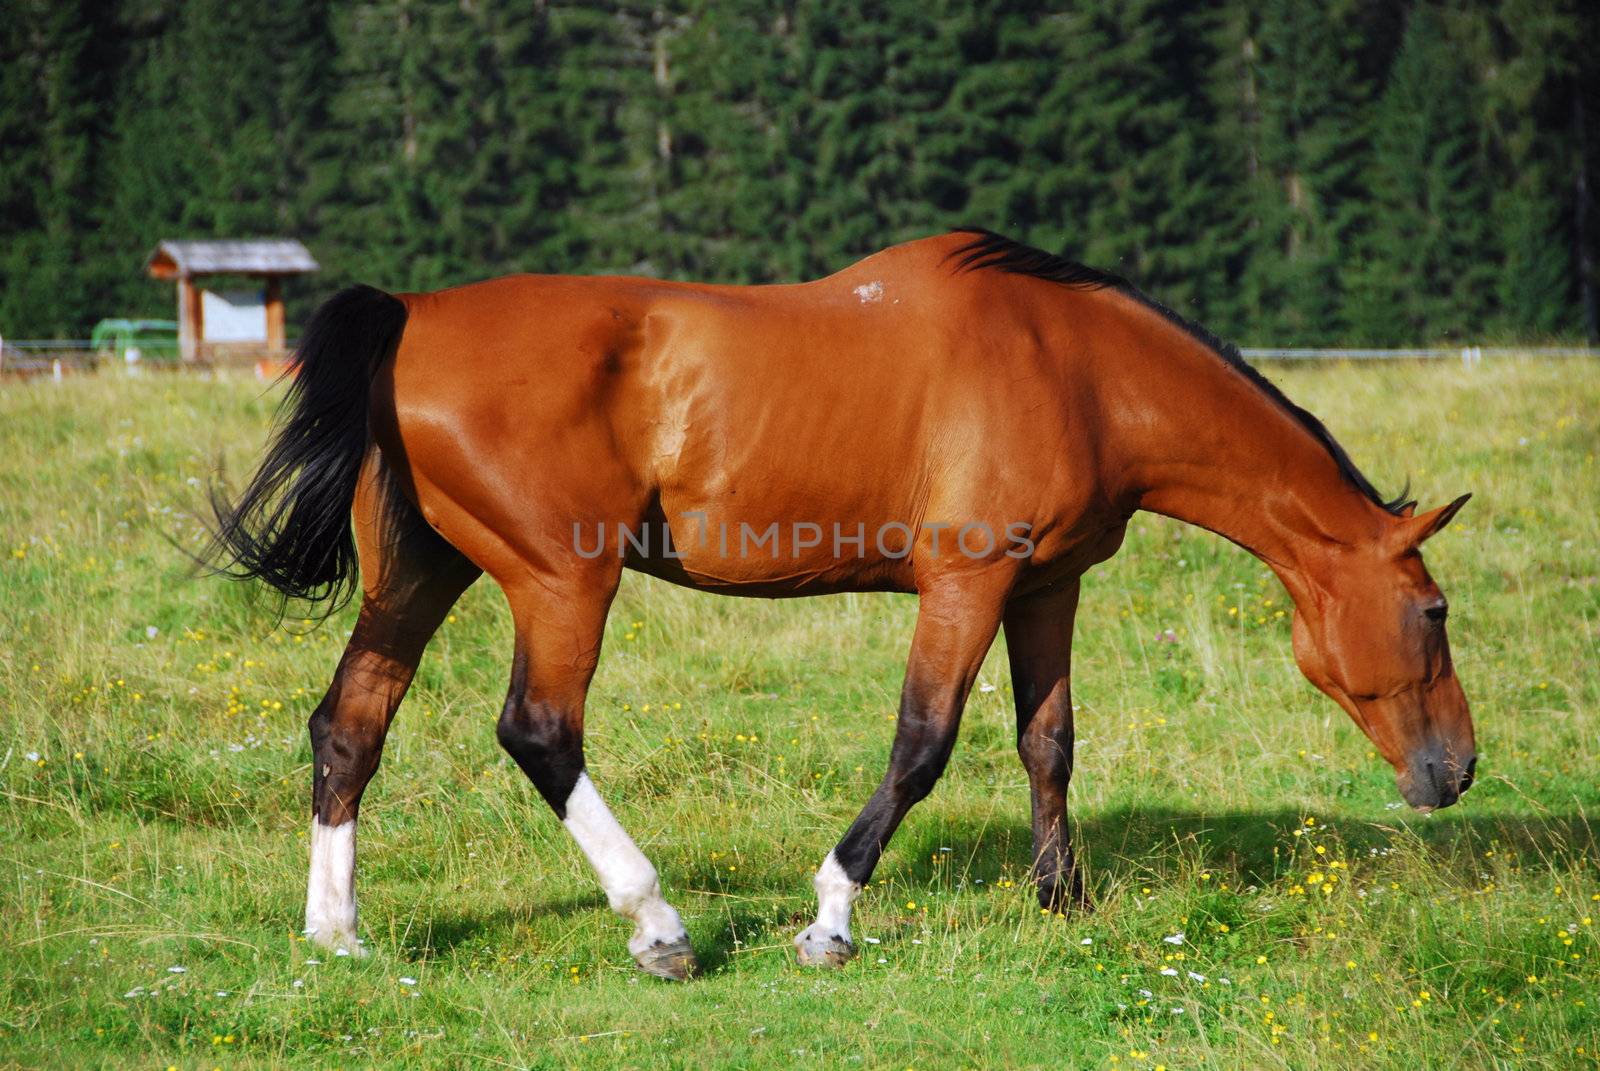 Horse in freedom in Val Visdende, Italy